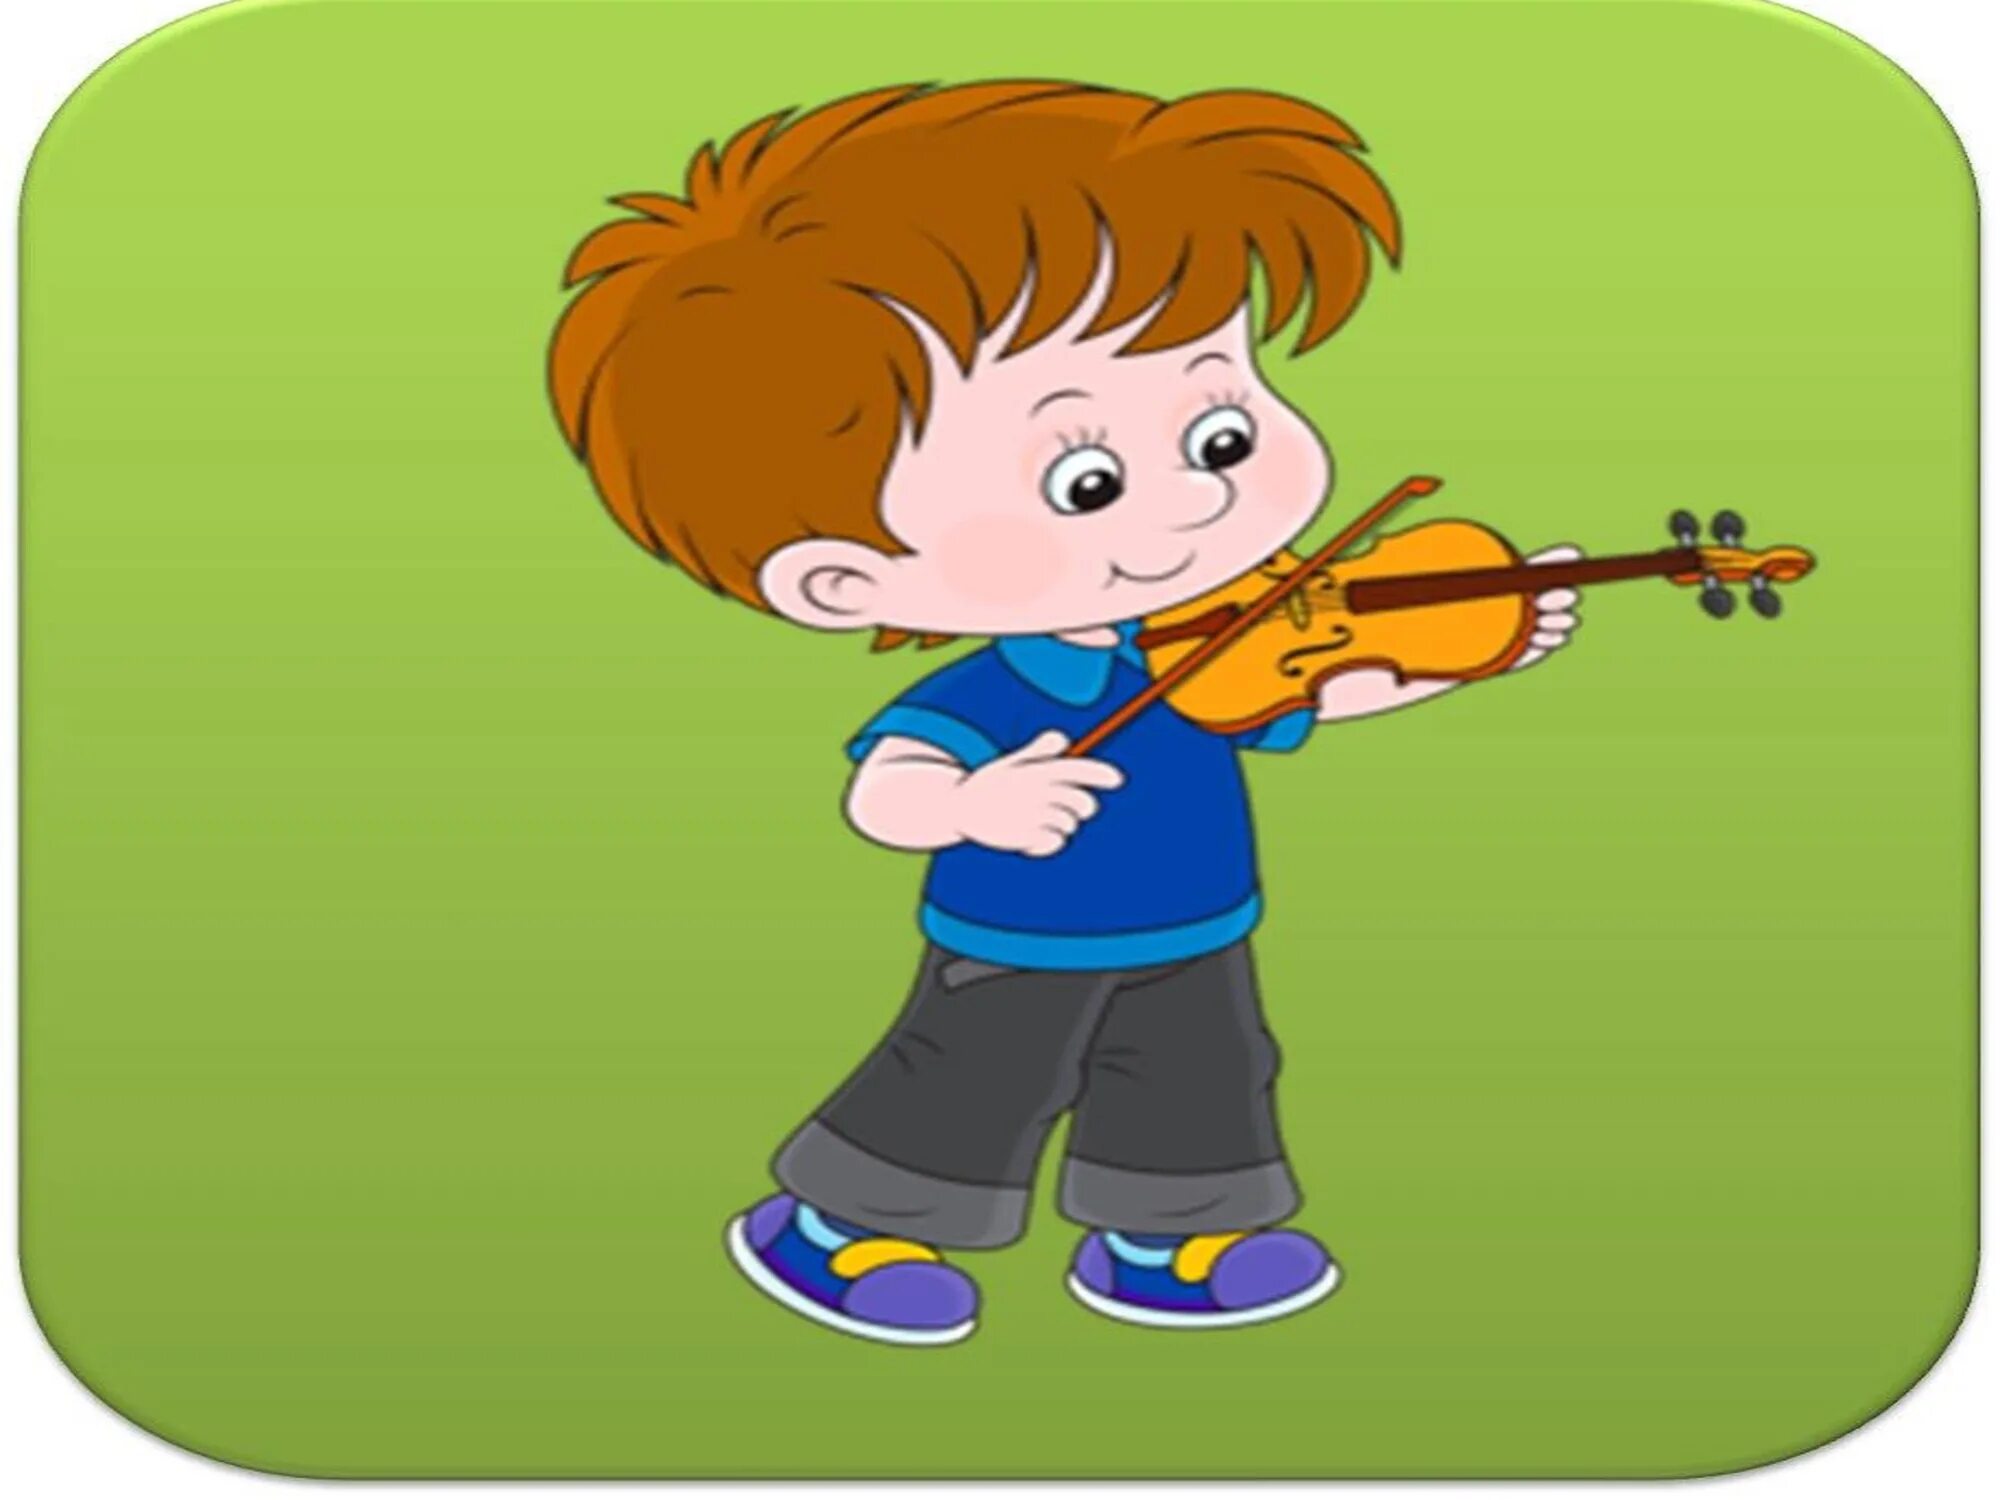 Музыка для мальчиков 8. Дети играют на музыкальных инструментах. Музыкальные картинки для детей. Нарисованные дети играют на музыкальных инструментах. Музыкальные инструменты для детей.